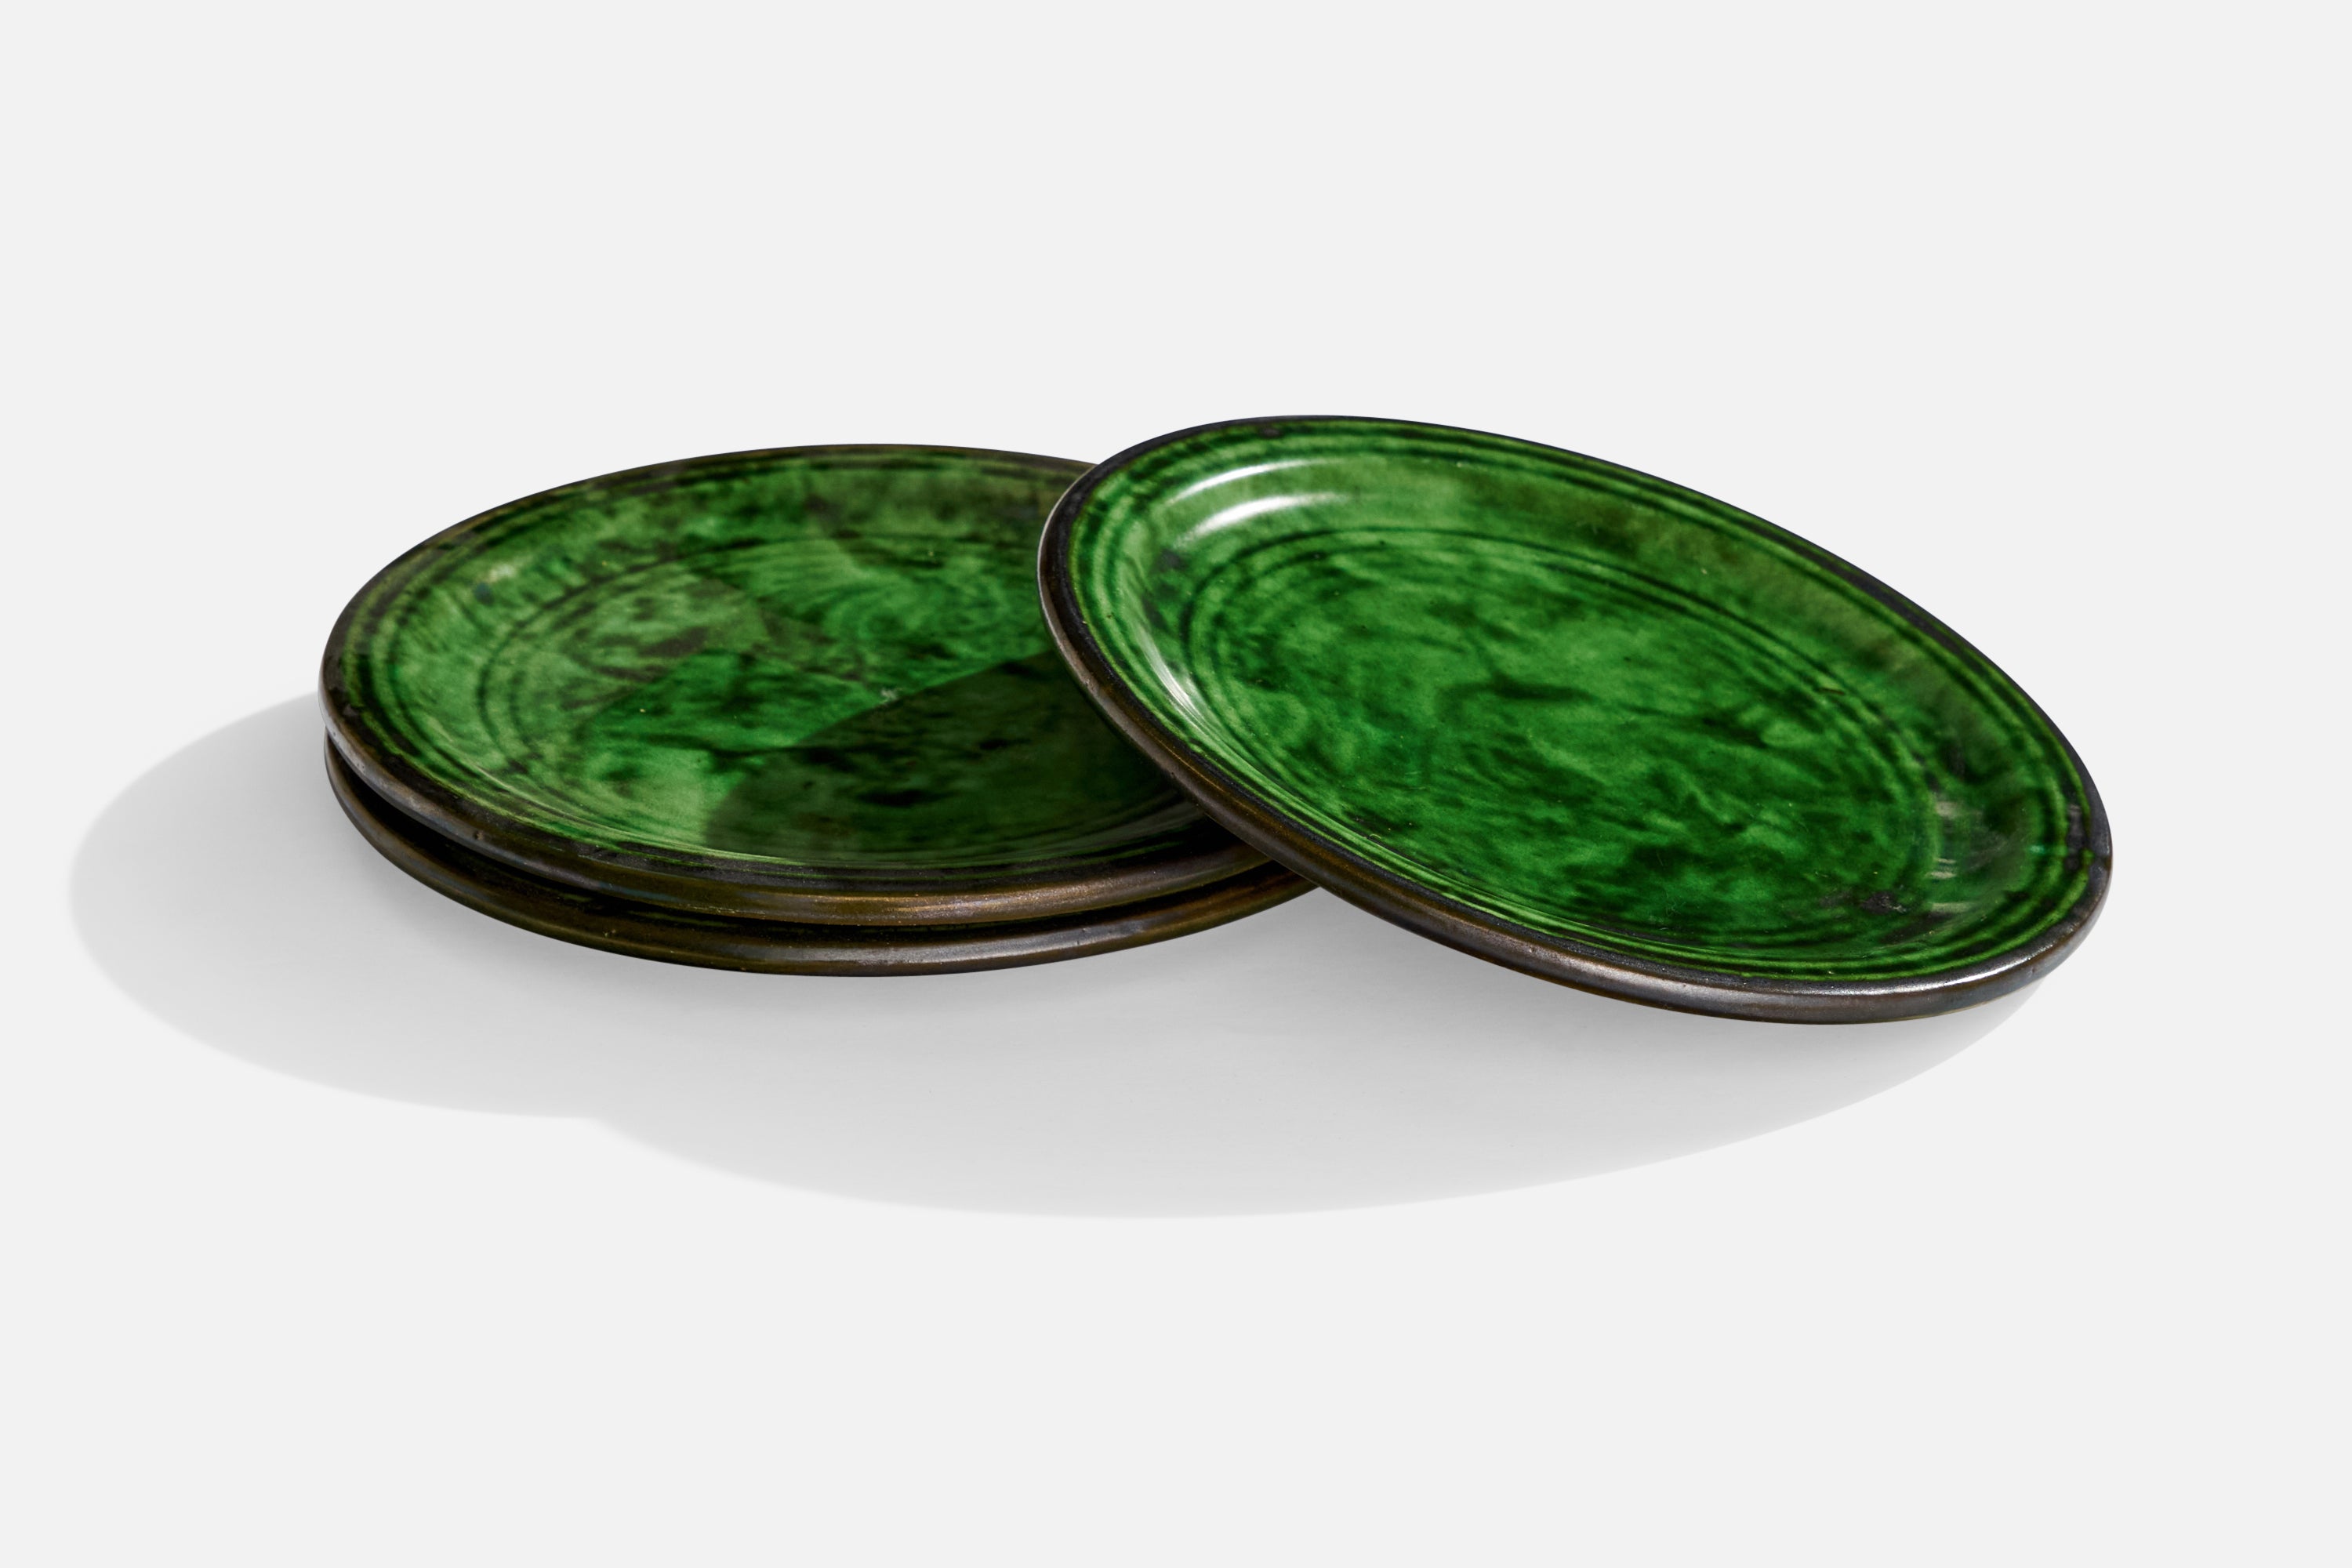 Ein Satz von 3 kleinen grün glasierten Keramiktellern, hergestellt von Nittsjö, Schweden, 1930er Jahre.